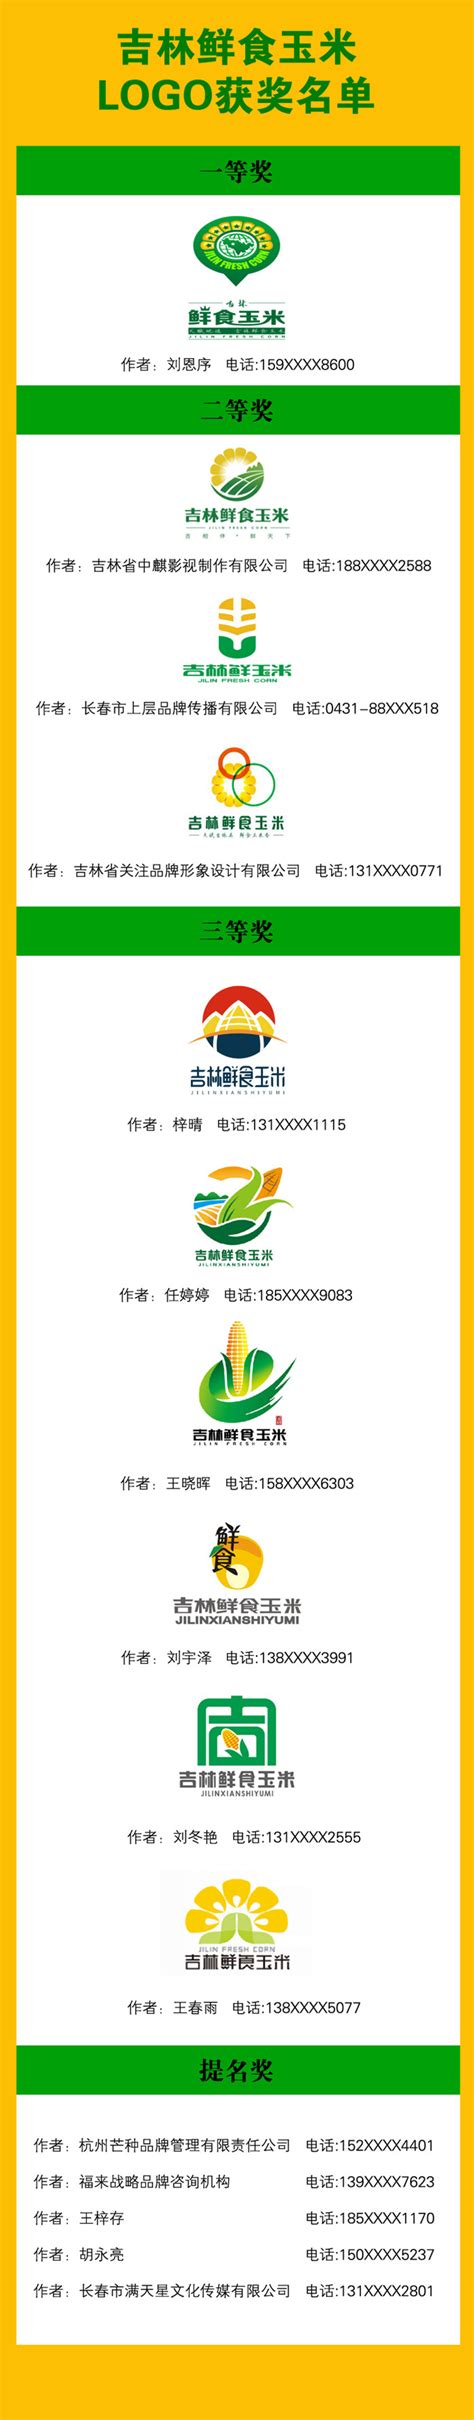 吉林鲜食玉米LOGO及广告语征集获奖作品公示-设计揭晓-设计大赛网